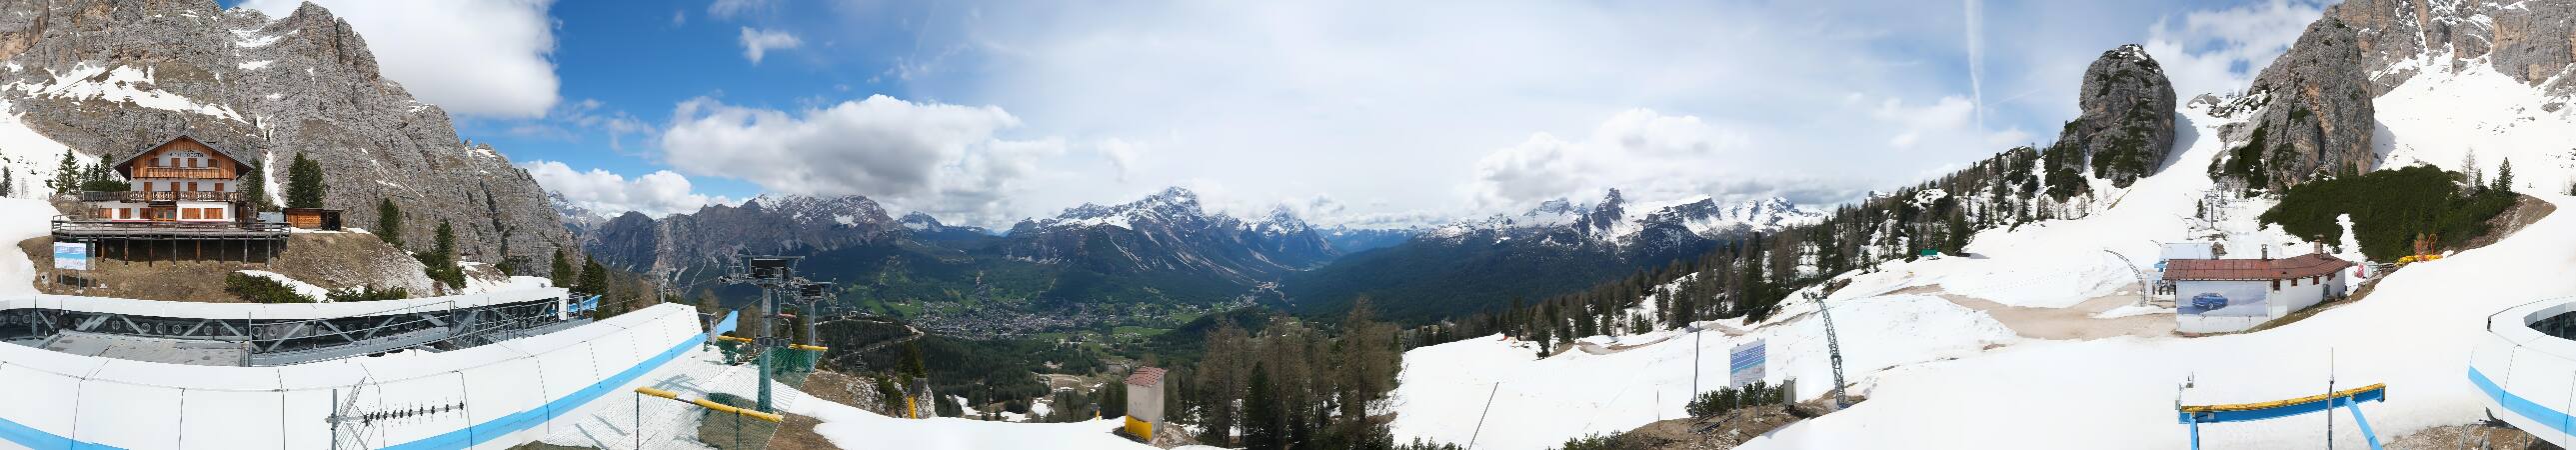 Webcam Cortina d’Ampezzo: Tofana, Falzarego, 5 Torri